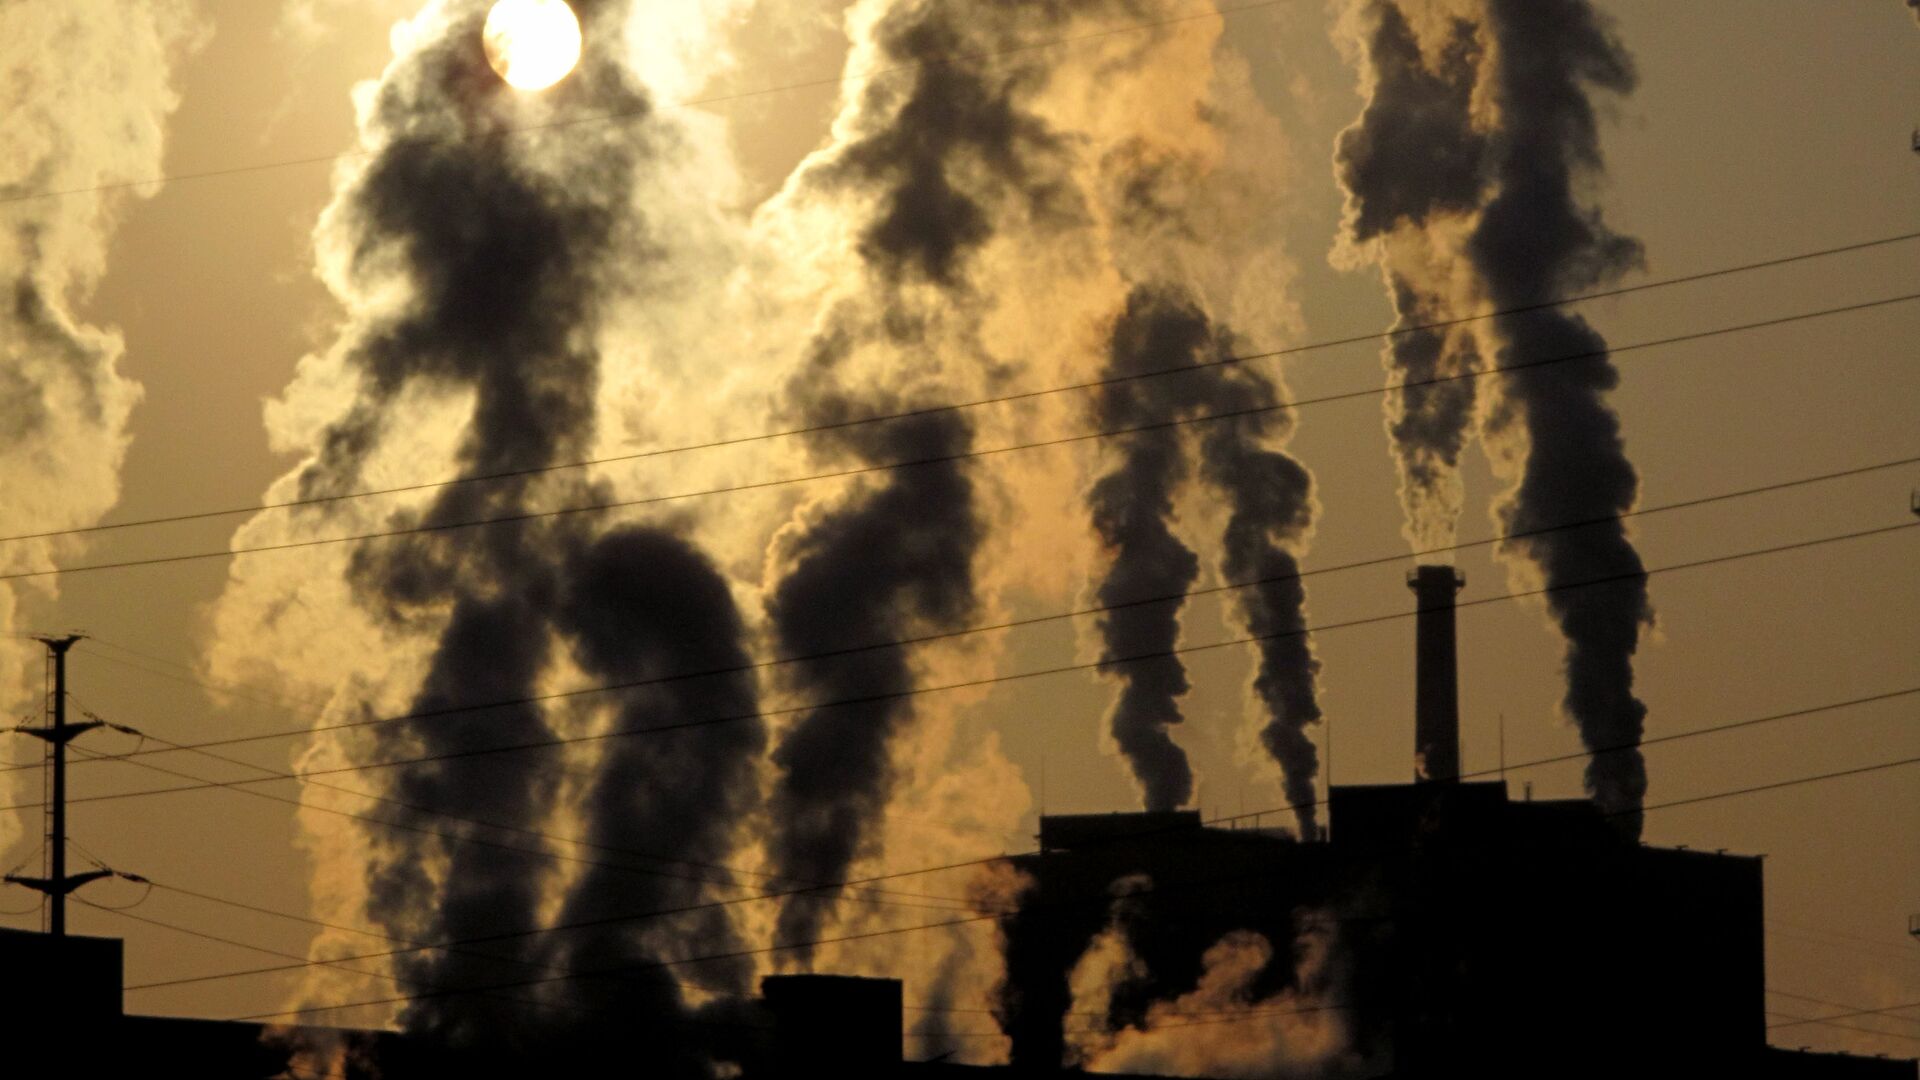 Выброс токсичных веществ. Загрязнение воздуха. Выбросы вредных веществ в атмосферу. Выбросы токсичных веществ. Выбросы в воздух загрязняющих вредных веществ.